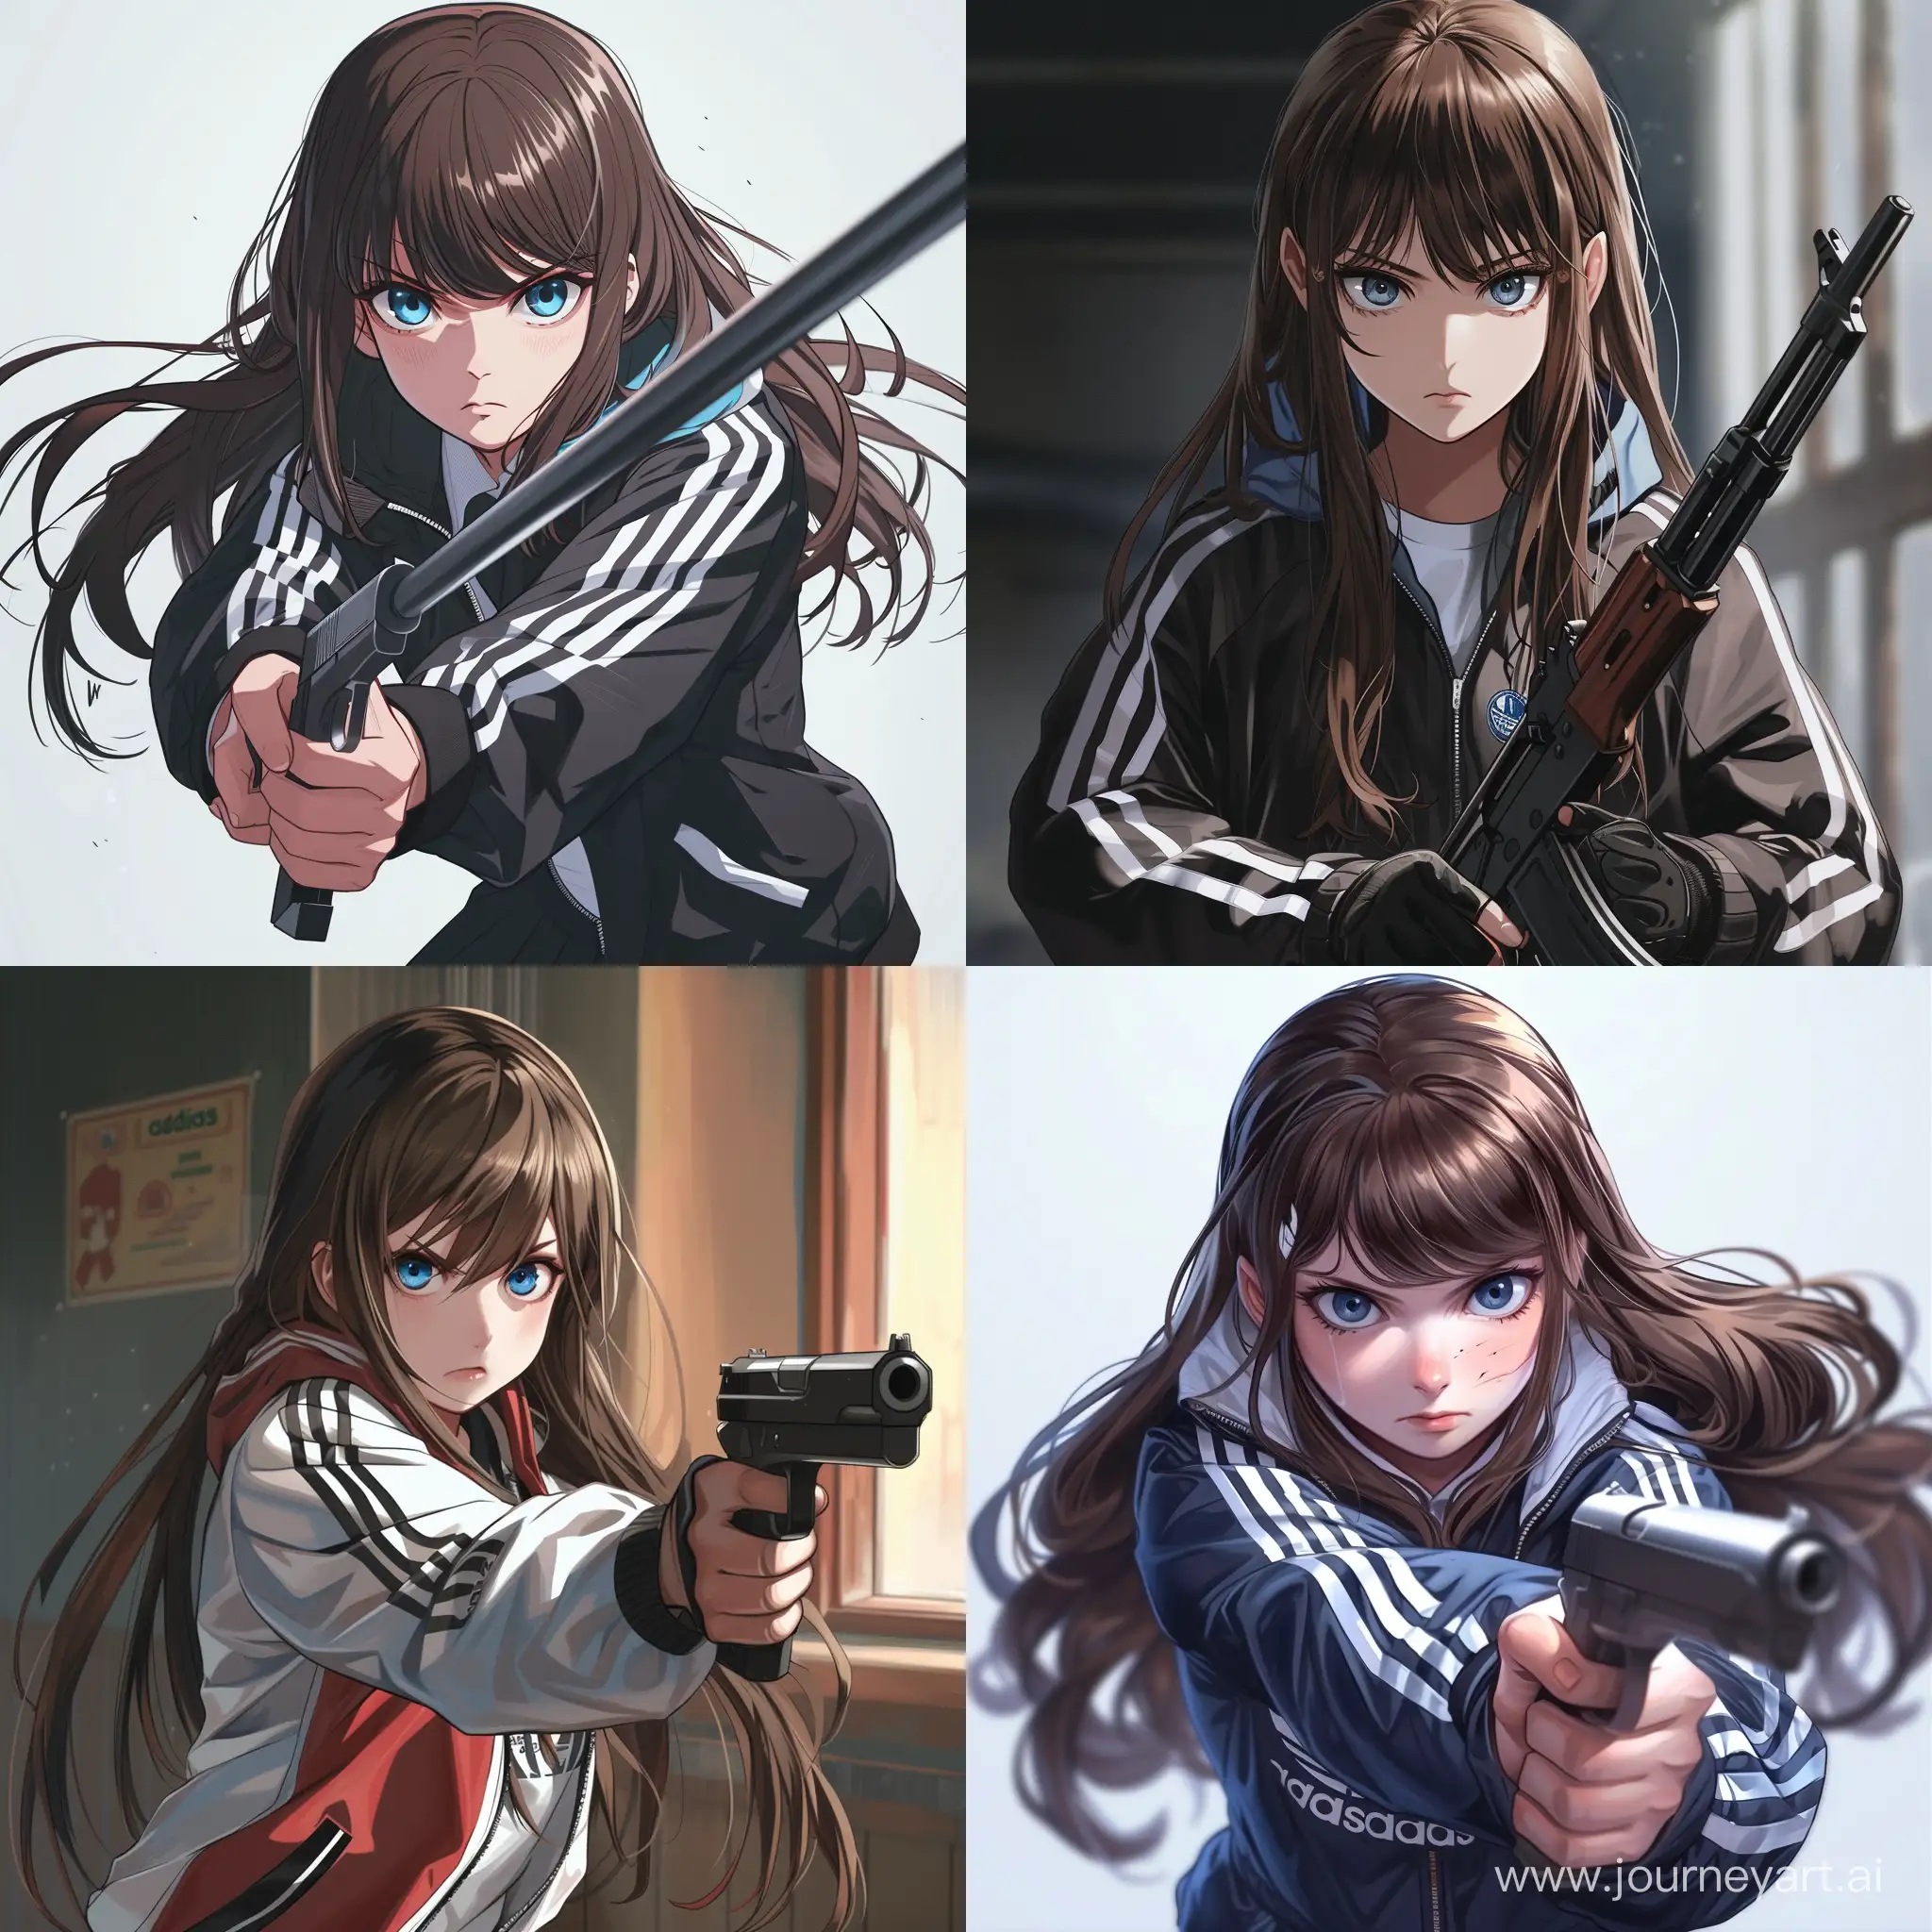 Изобрази 16-17 летнюю школьницу из россии в ветровке адидас и школьной форме, с длинными коричневыми волосами и голубыми глазами, с оружием в руках